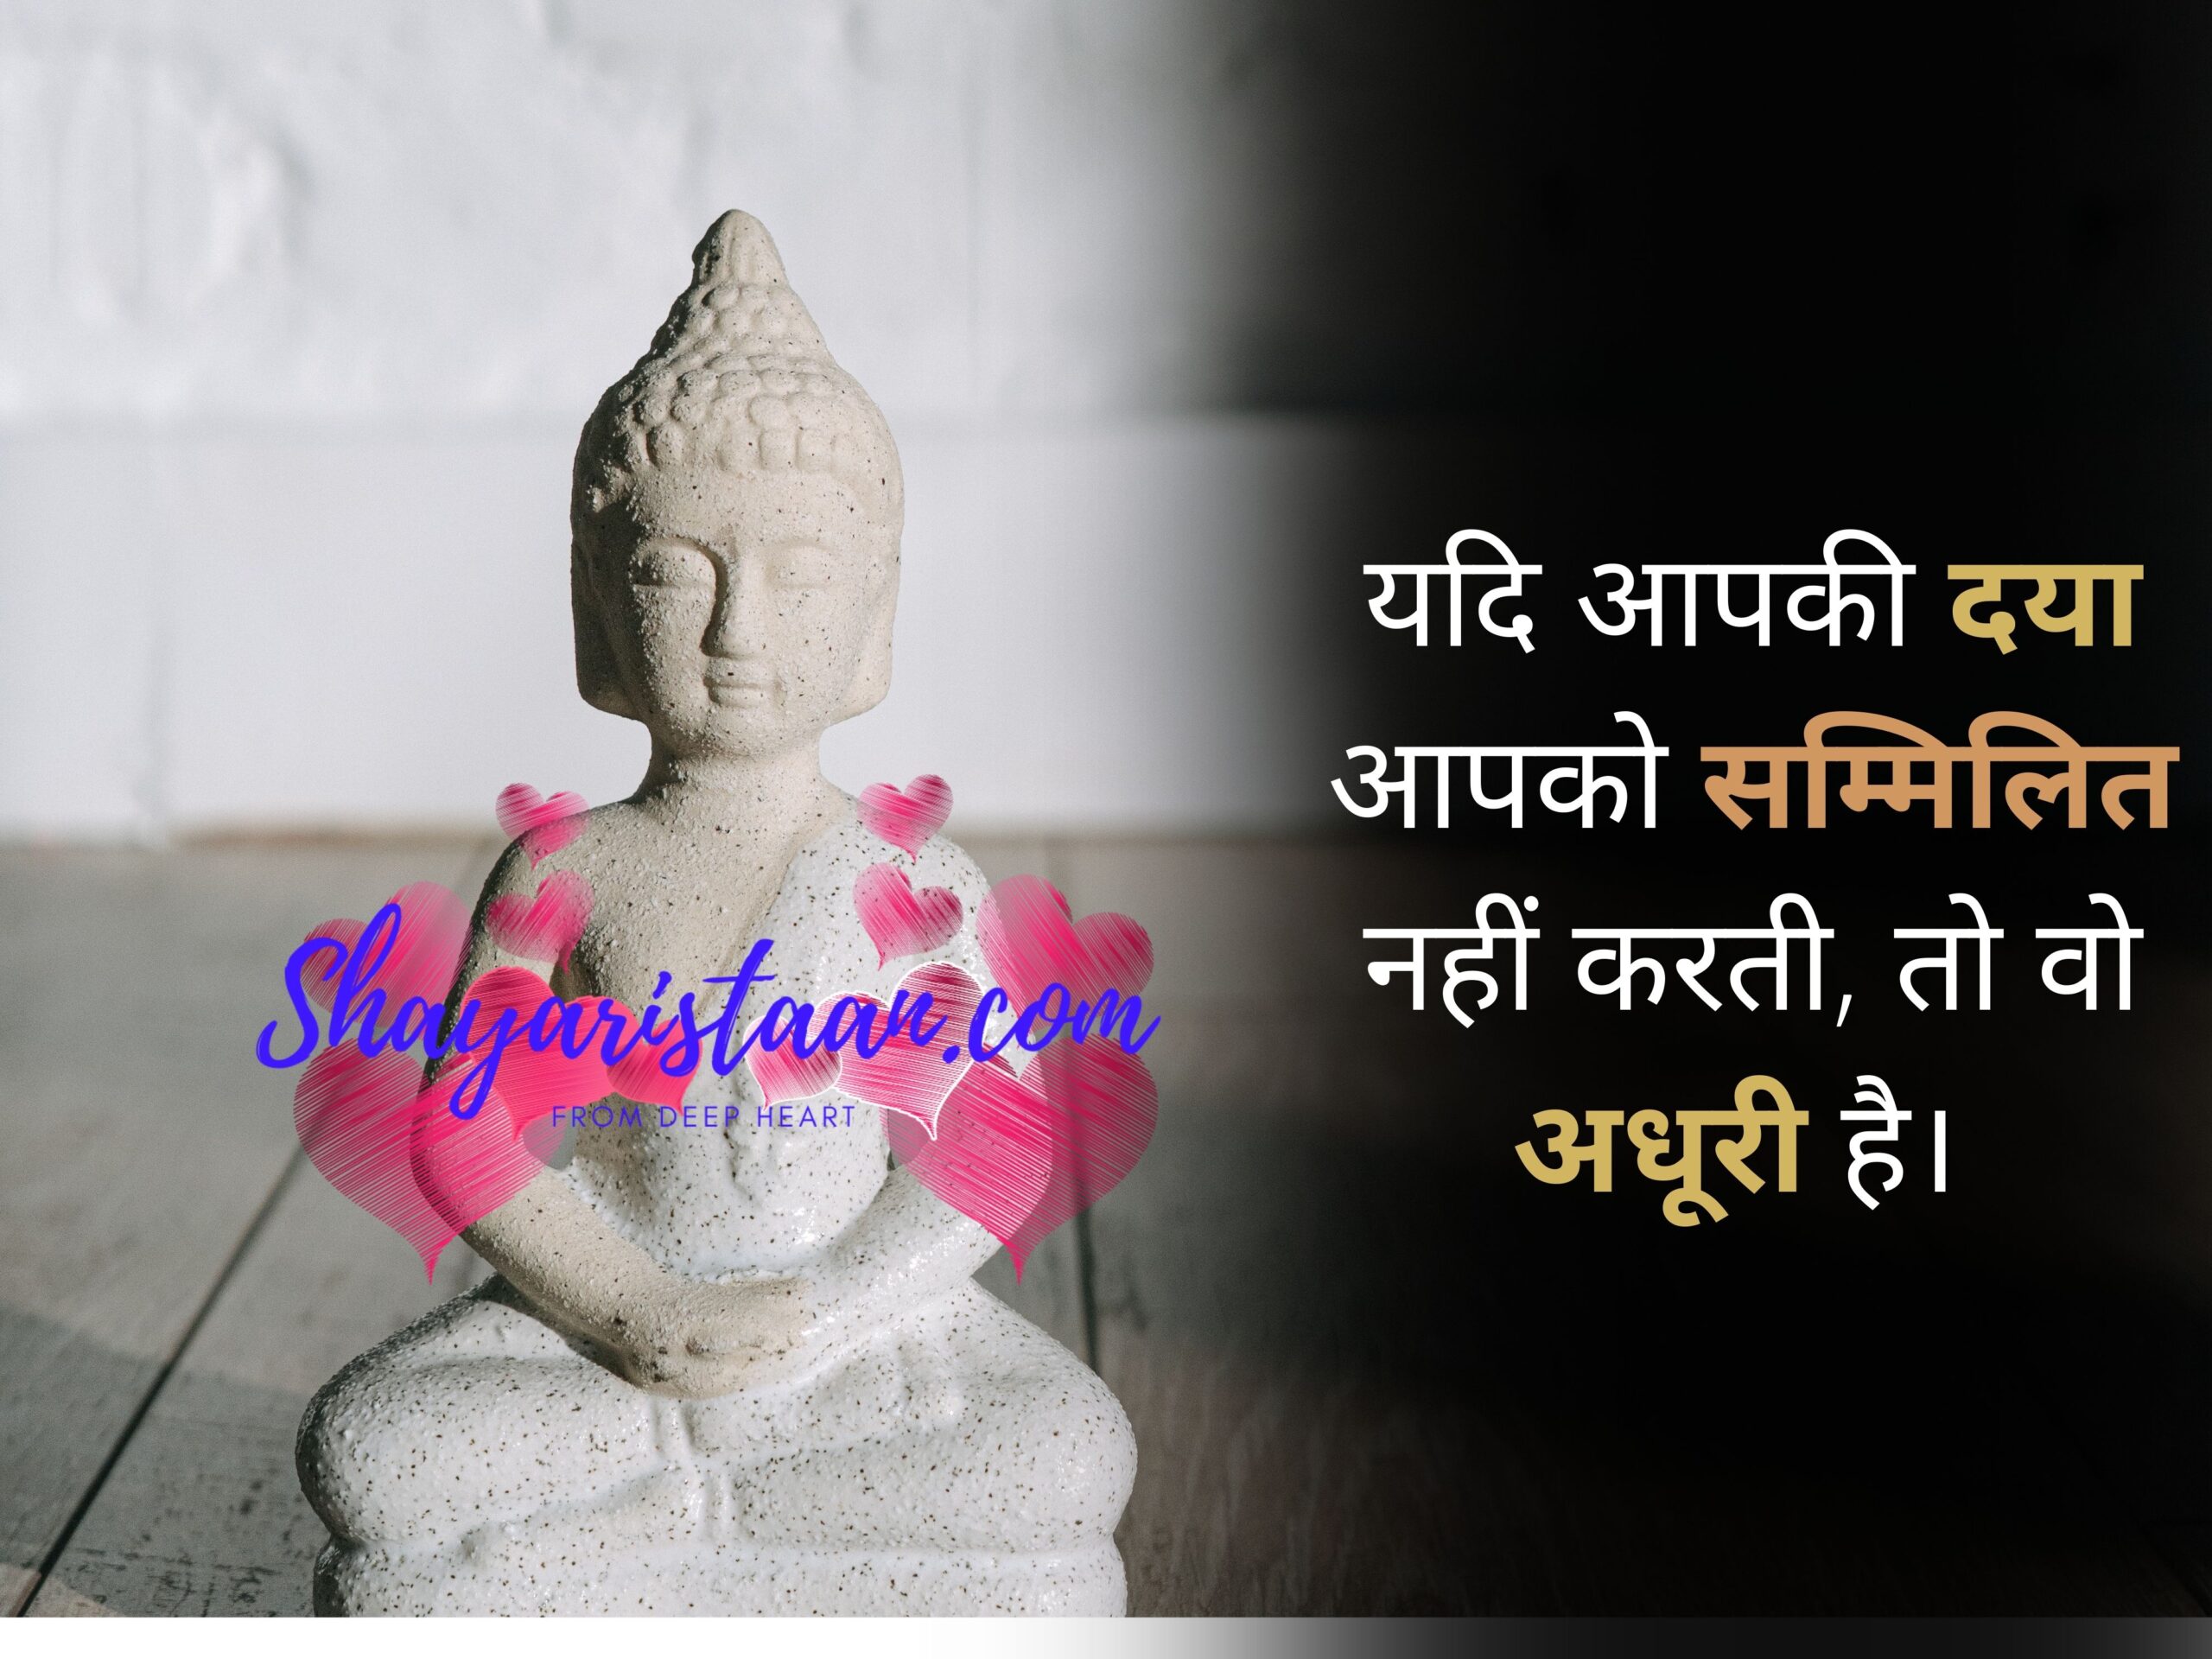 buddha quotes in hindi | यदि आपकी दया आपको सम्मिलित नहीं करती, तो वो अधूरी है। 